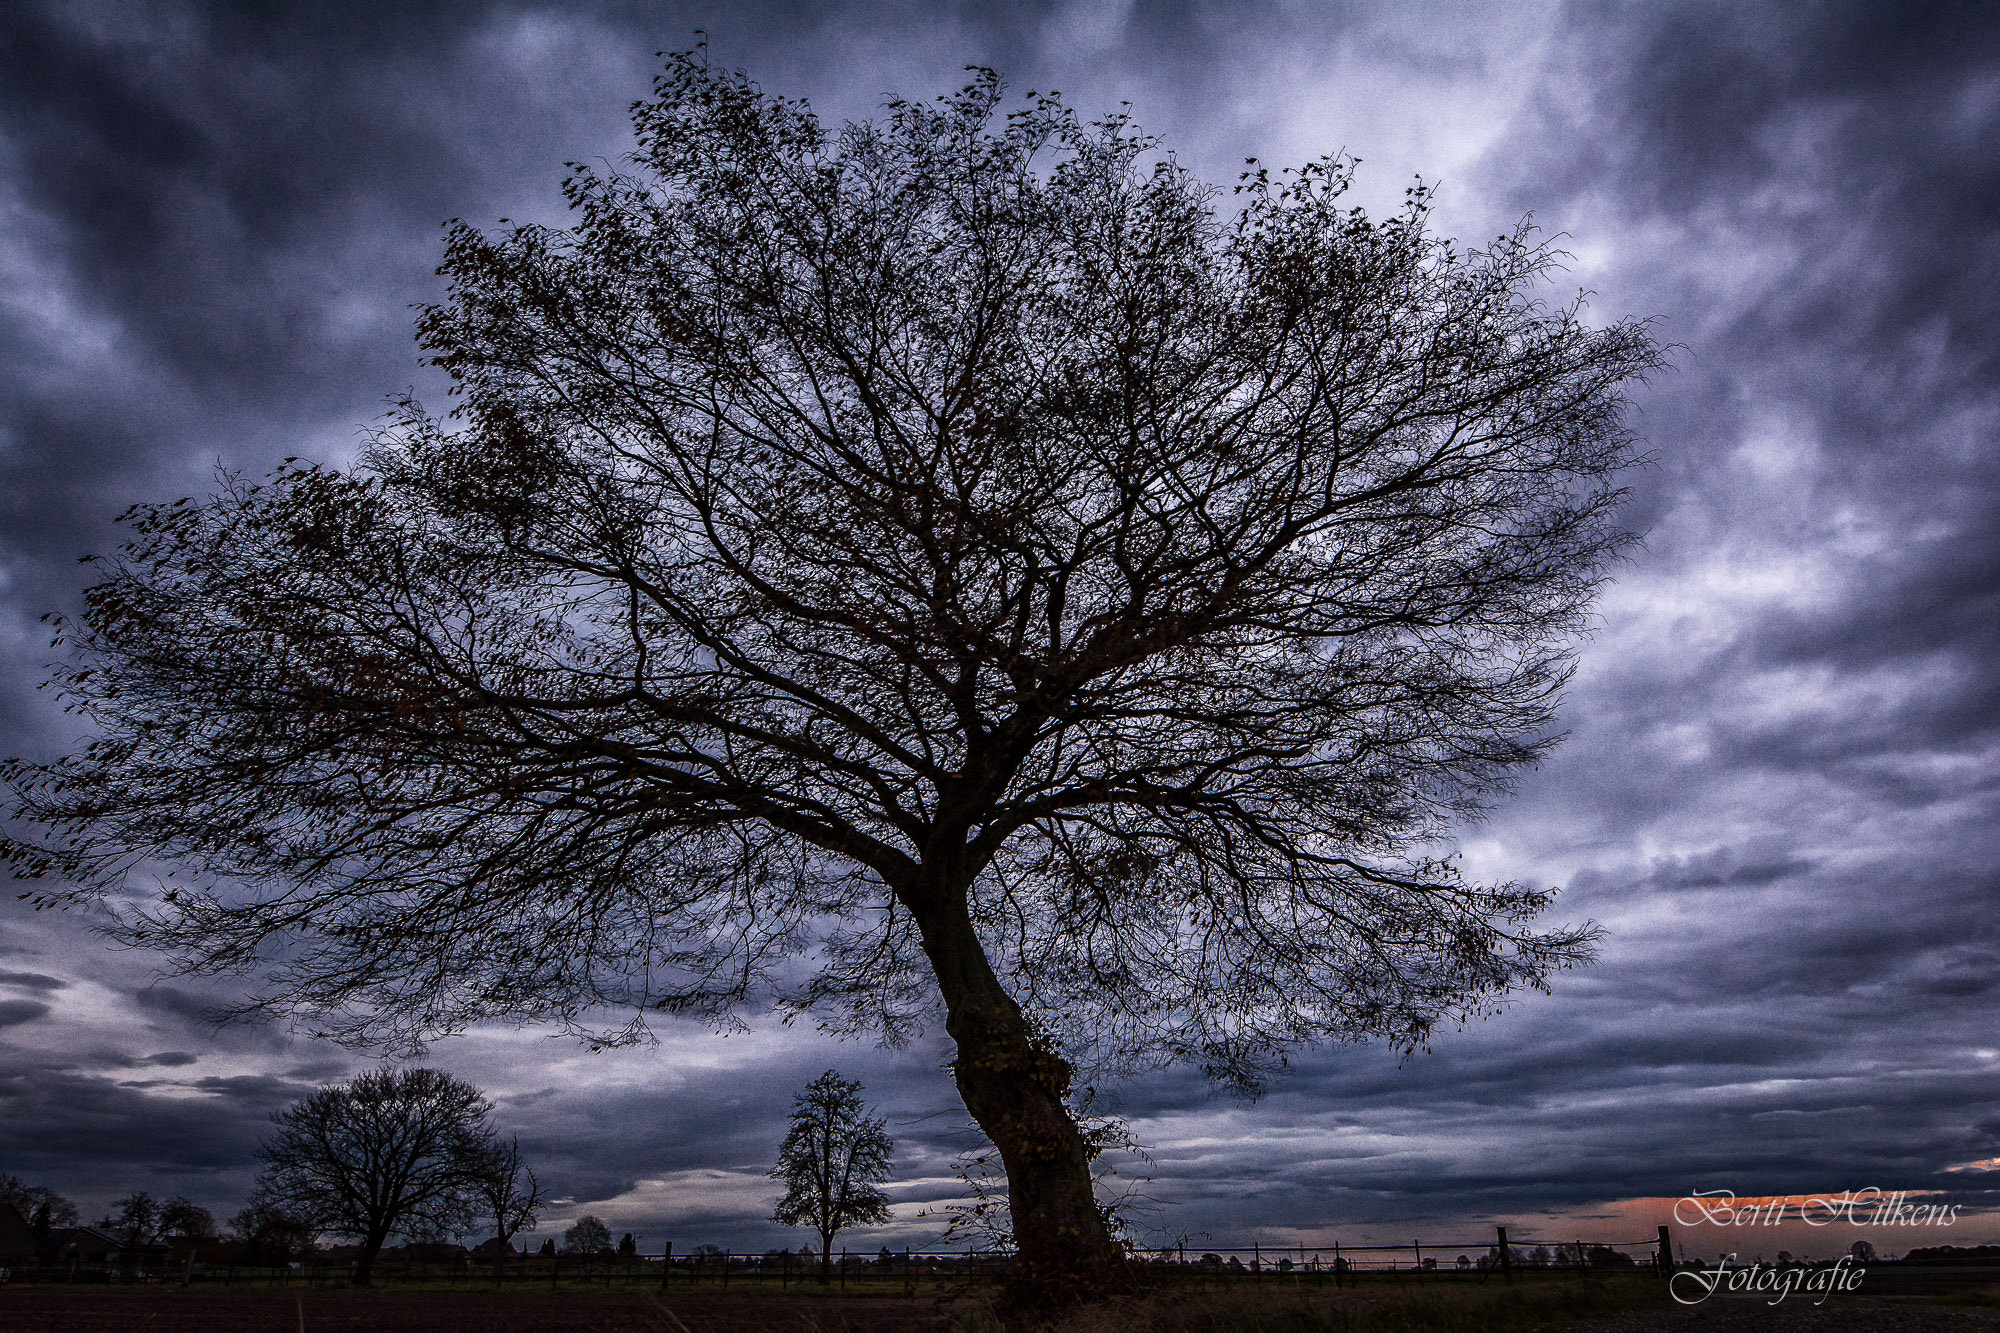 Nikon D7100 sample photo. A beaytyfull tree and sky photography